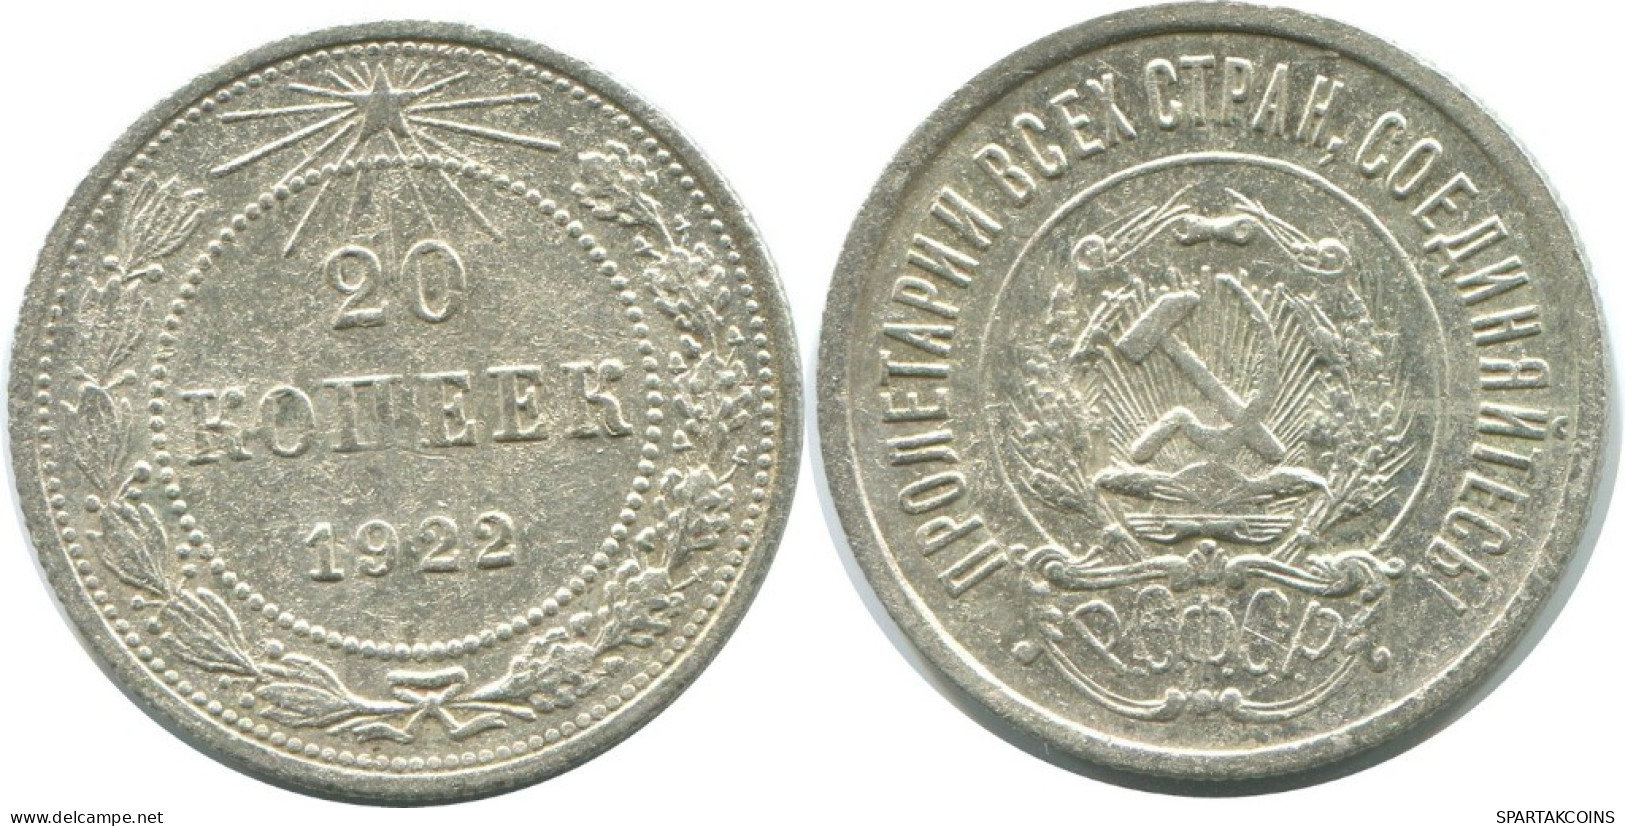 20 KOPEKS 1923 RUSSIA RSFSR SILVER Coin HIGH GRADE #AF374.4.U.A - Russland